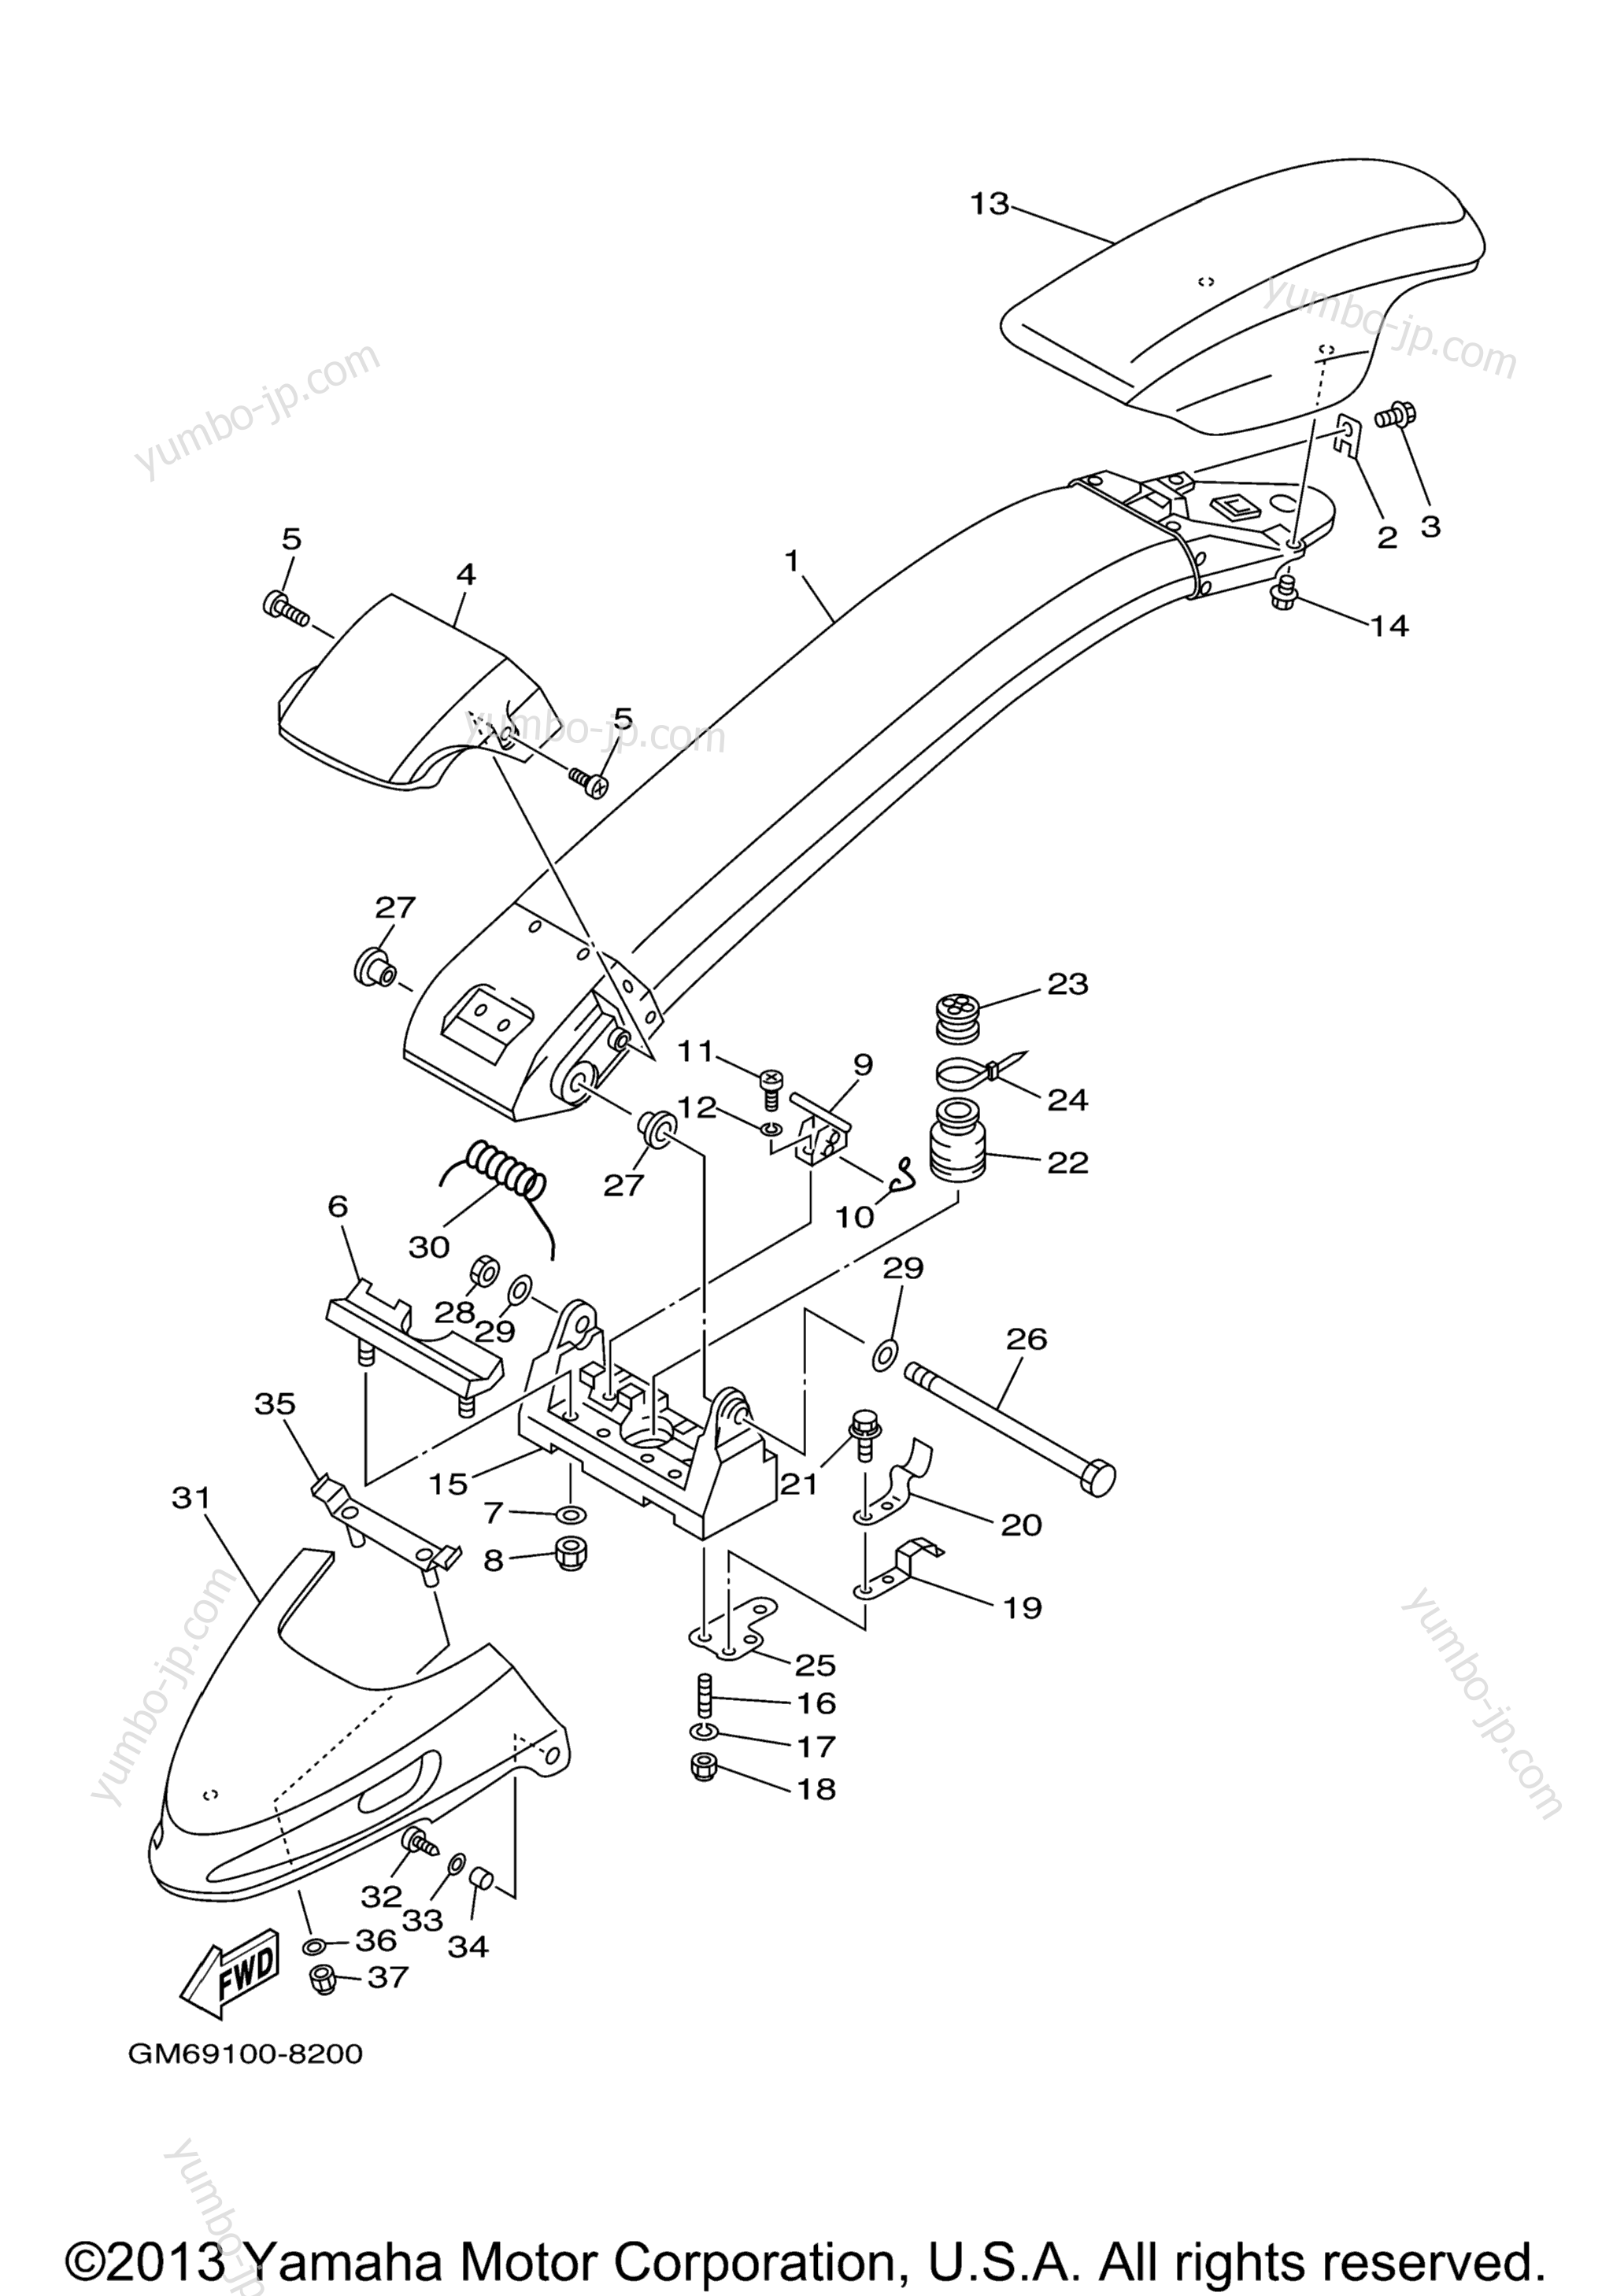 Steering 2 для гидроциклов YAMAHA SuperJet (SJ700BE) 2006 г.